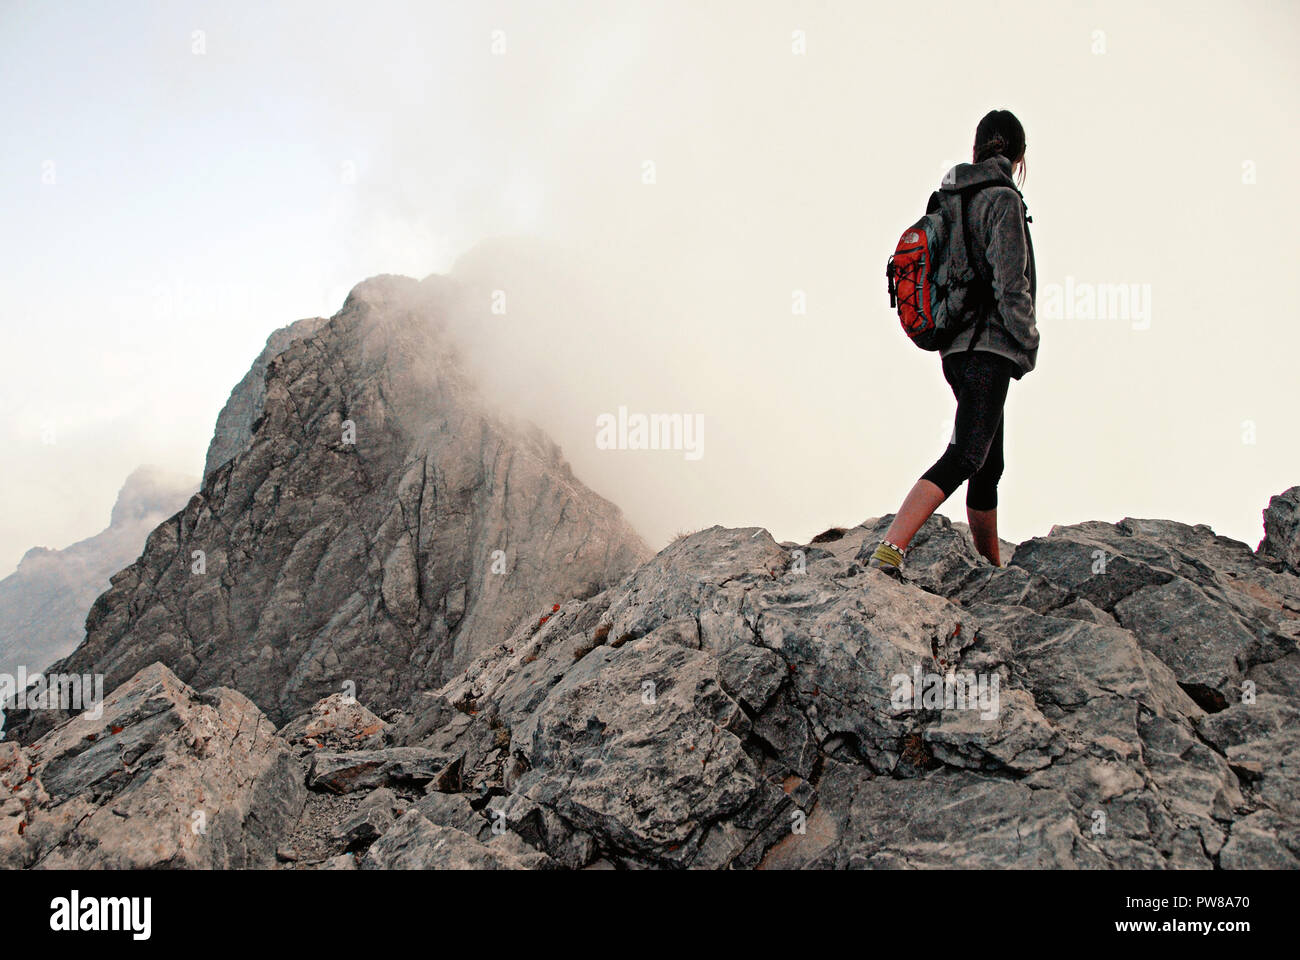 Griechenland, Olymp, ein Bergsteiger anstarren Gipfel Mytikas (2,917 m Höhe),  von 2.820 m. Höhe bei Skala Gipfel, auf dem Weg der E 4 Europäische lange  Dis Stockfotografie - Alamy